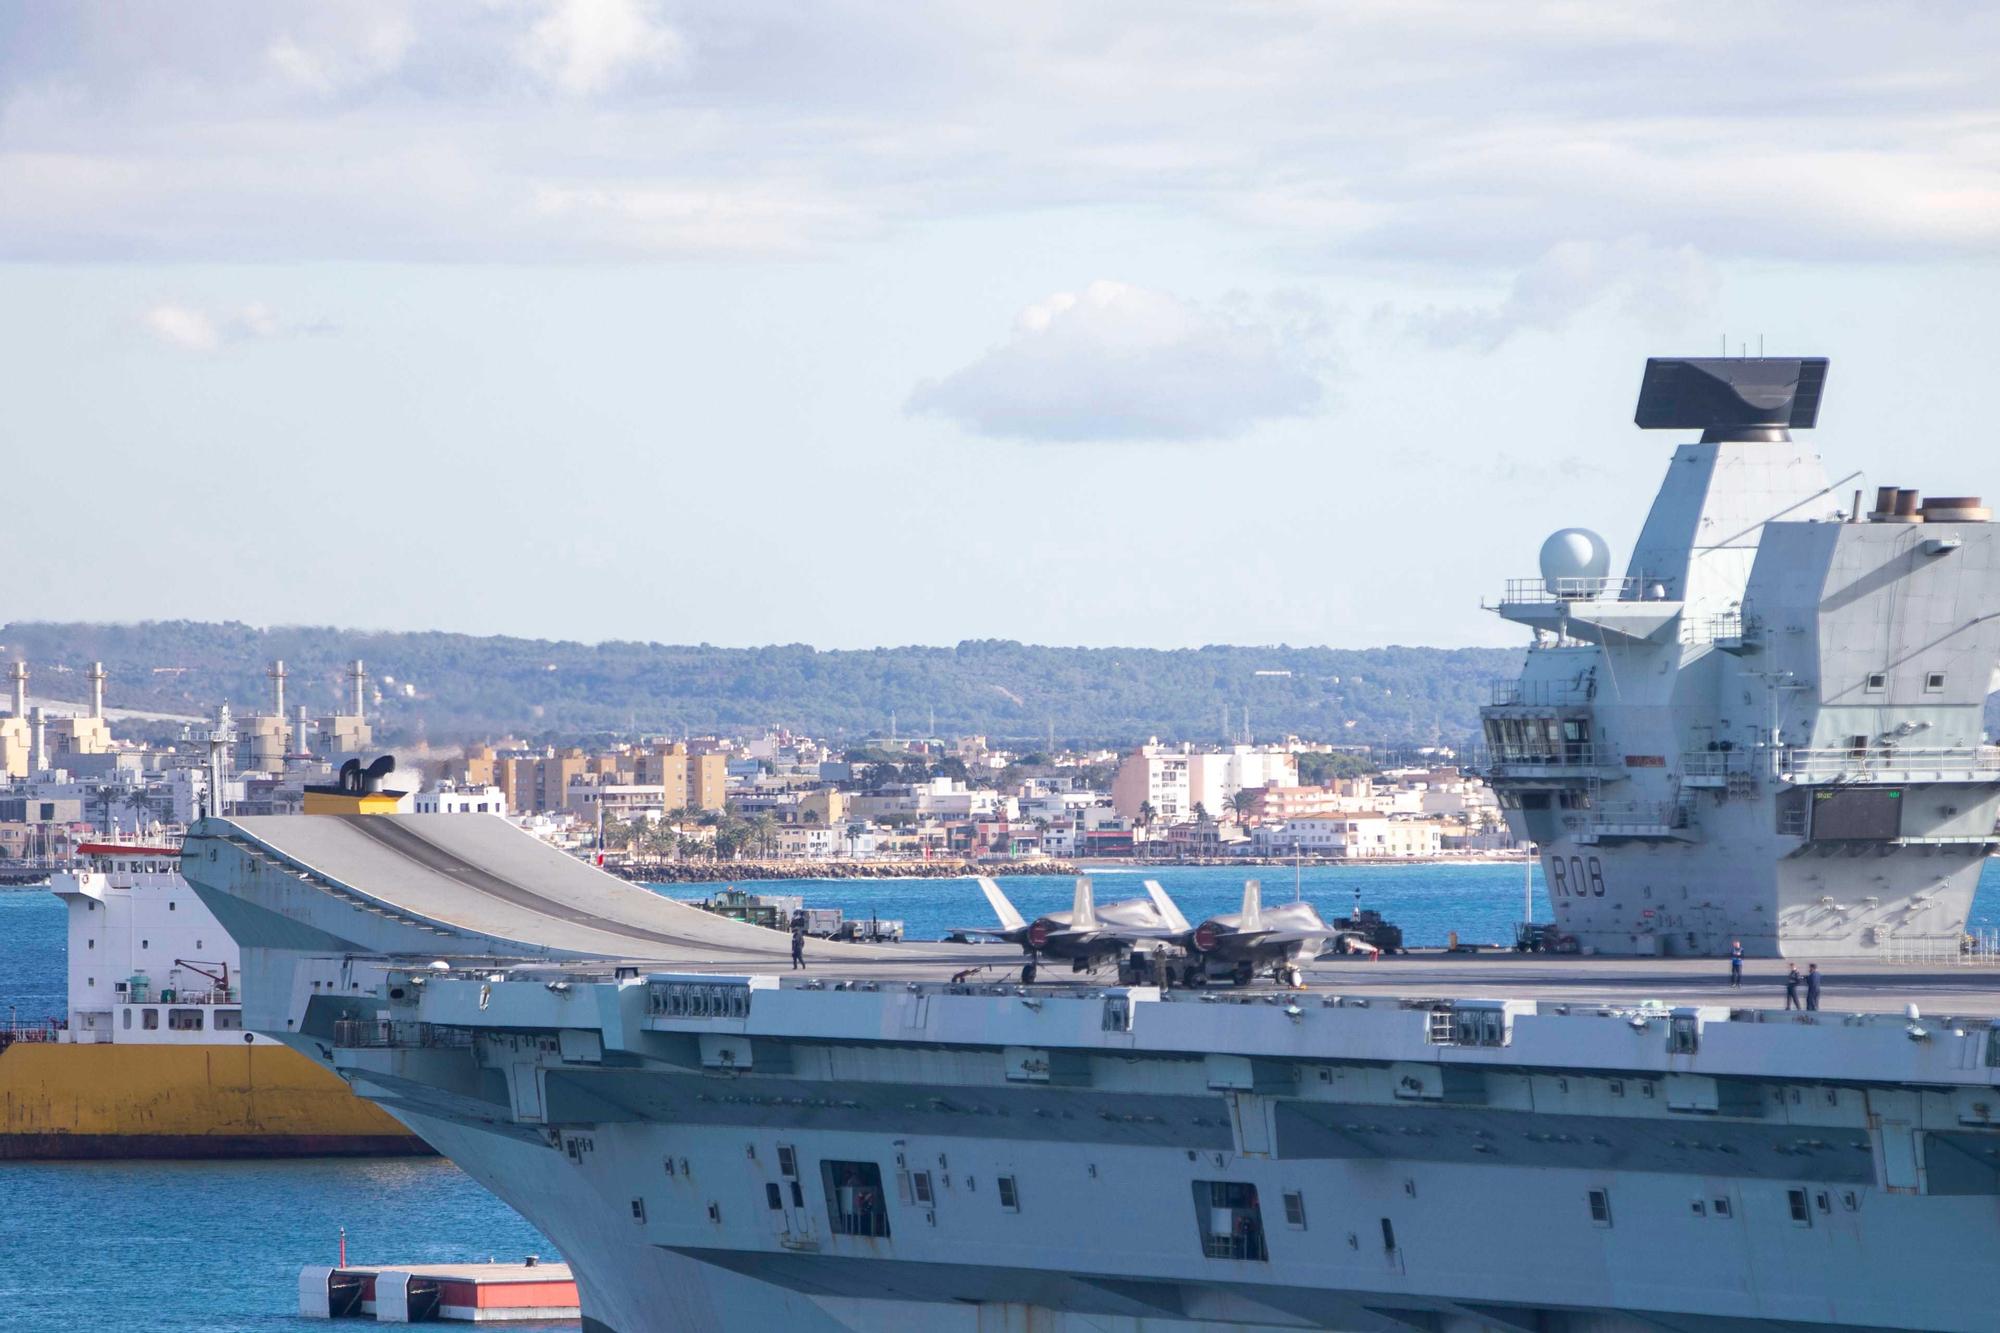 El portaaviones 'Queen Elizabeth', buque insignia de la Armada británica fondea en la Bahía de Palma